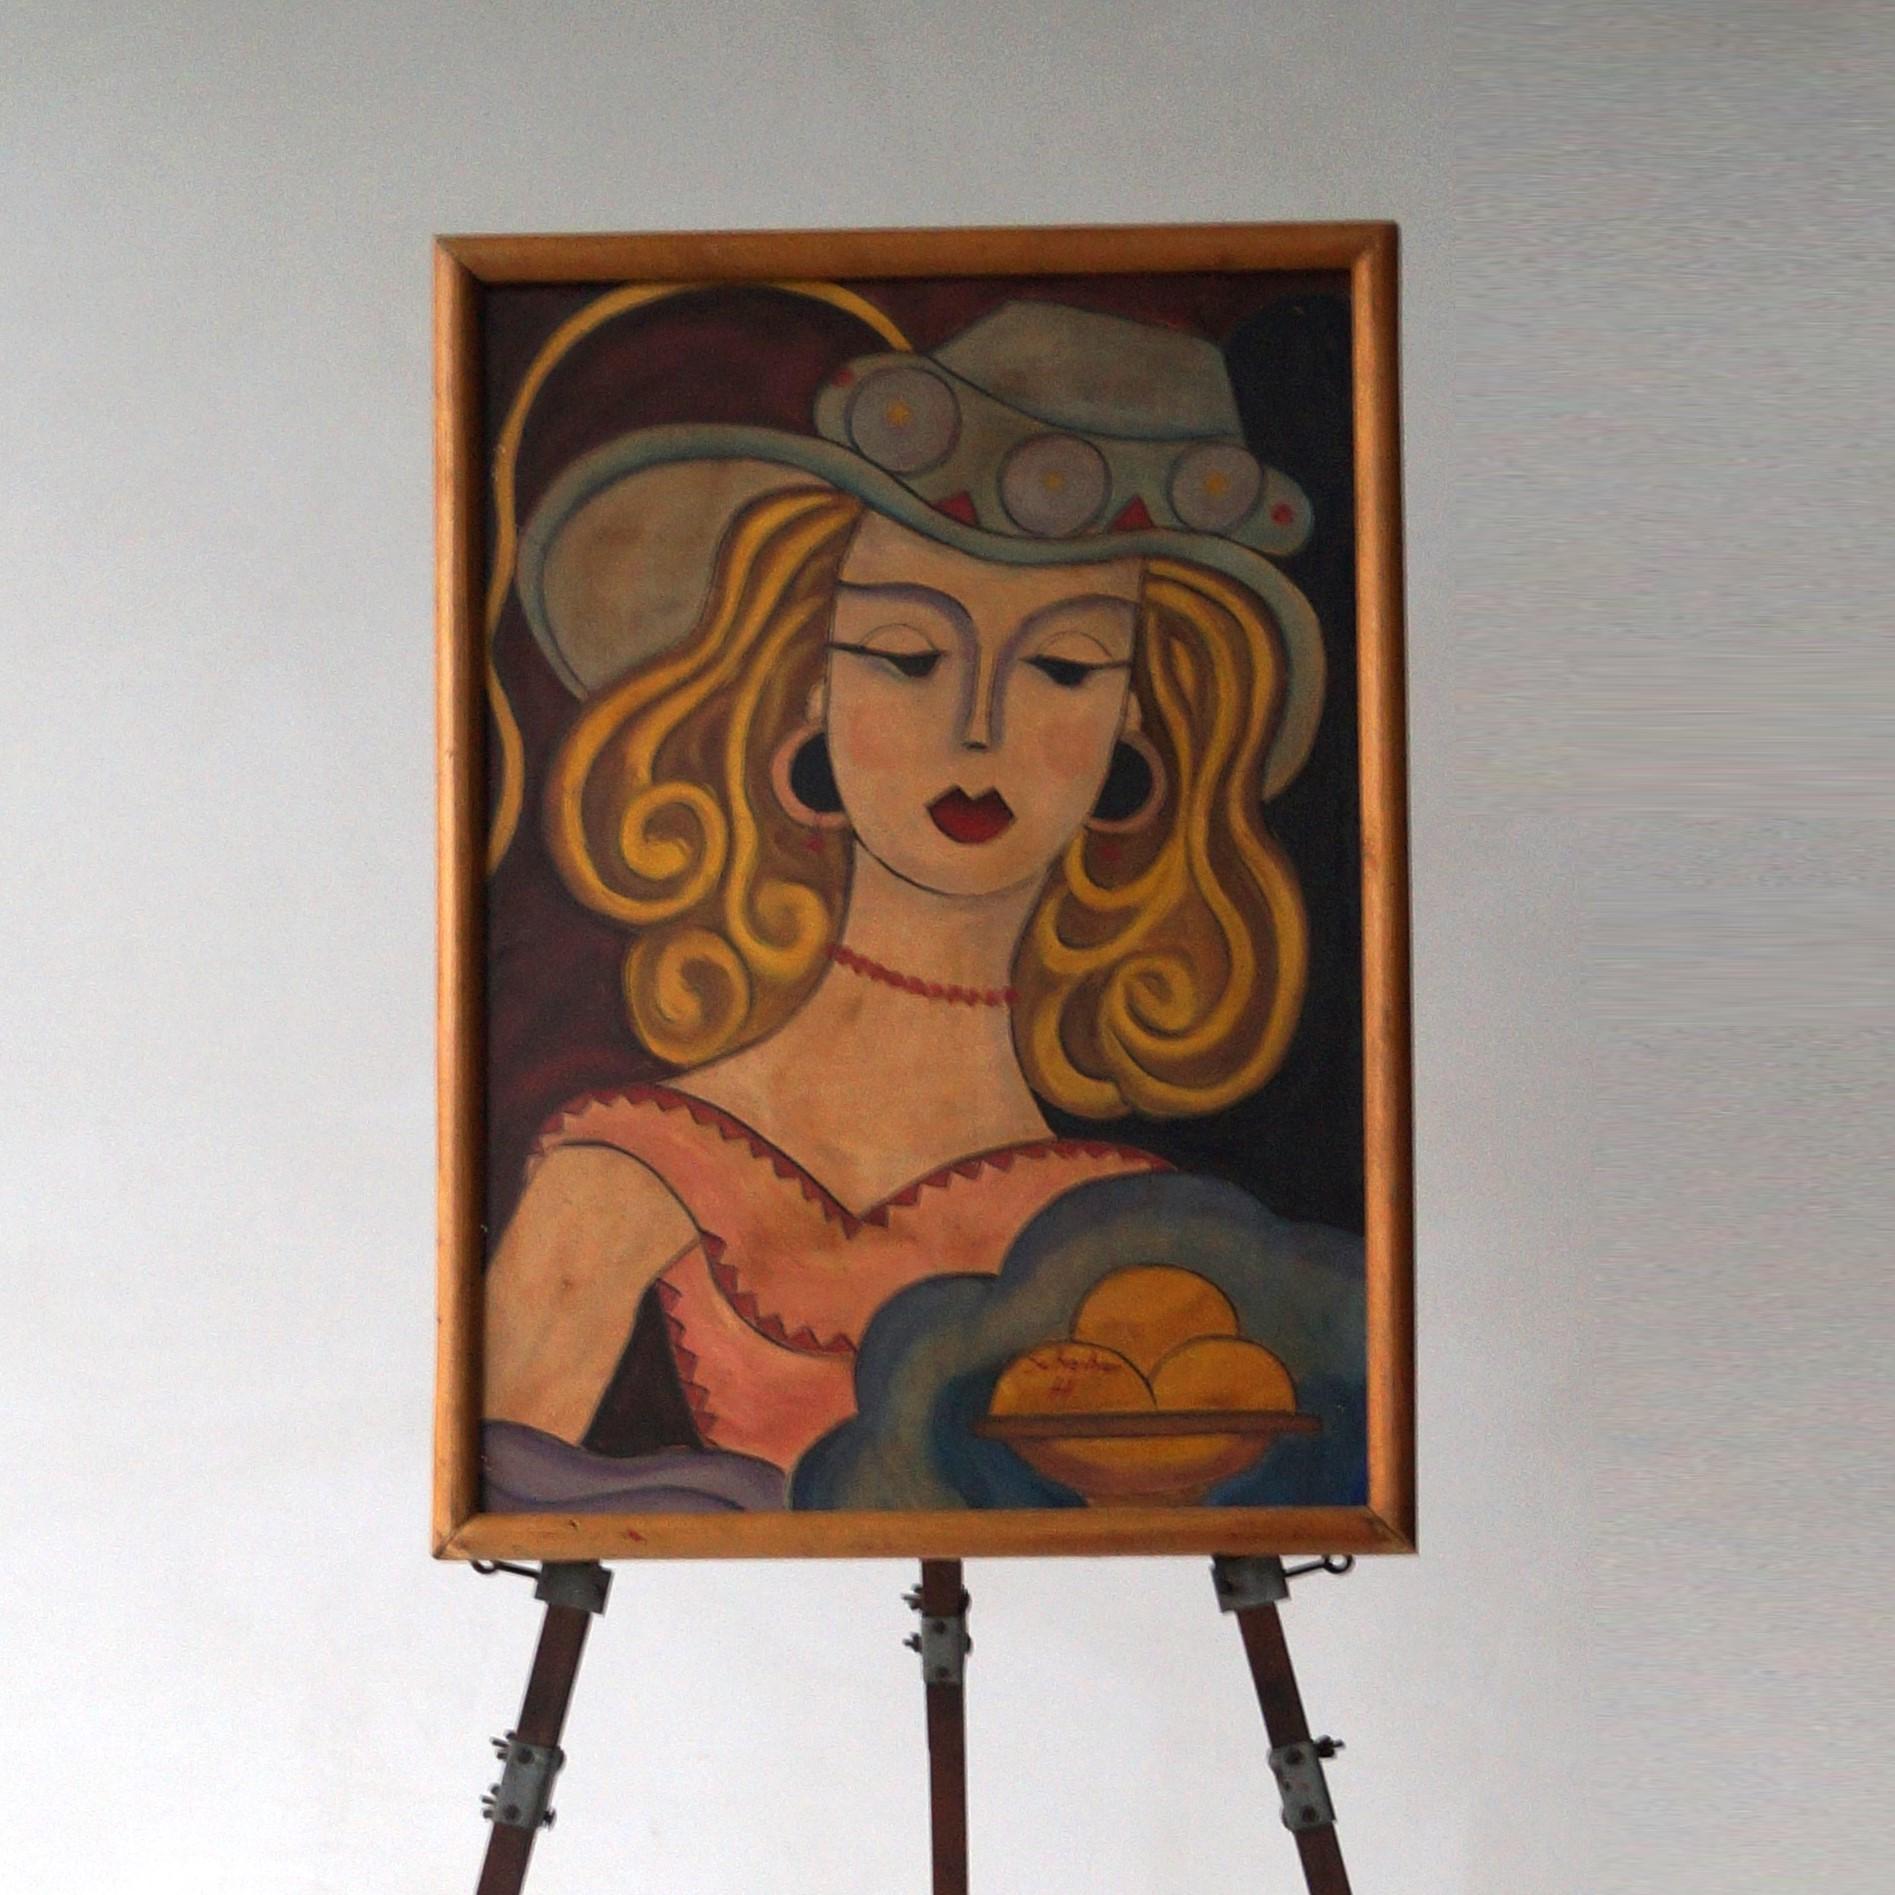 Ein besonders stimmungsvolles Gemälde einer Frau mit Hut, in Öl auf Isorelkarton. Geschätztes Datum um 1930. Unterzeichnet H. Scheiber.  Es handelt sich um ein recht großes Gemälde mit den charakteristischen Farben und Formen und einem besonders